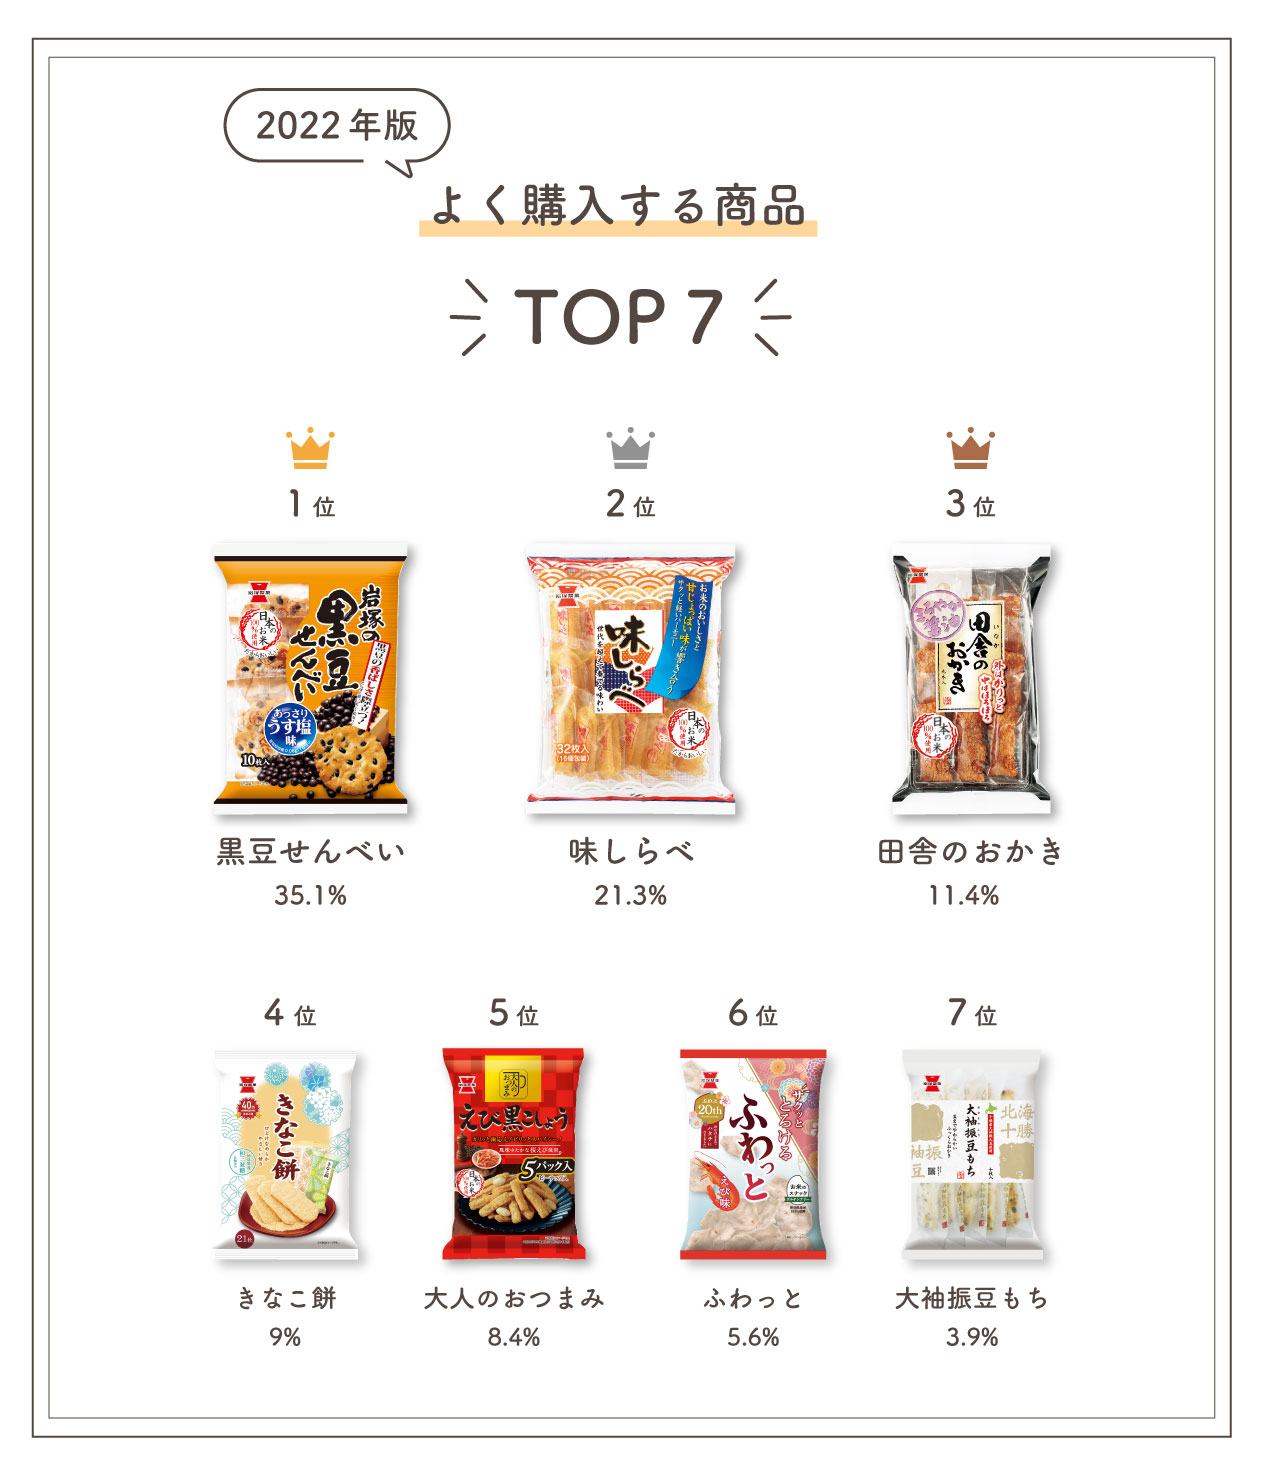 岩塚製菓の商品で最もよく購入するものをお答えください
	  